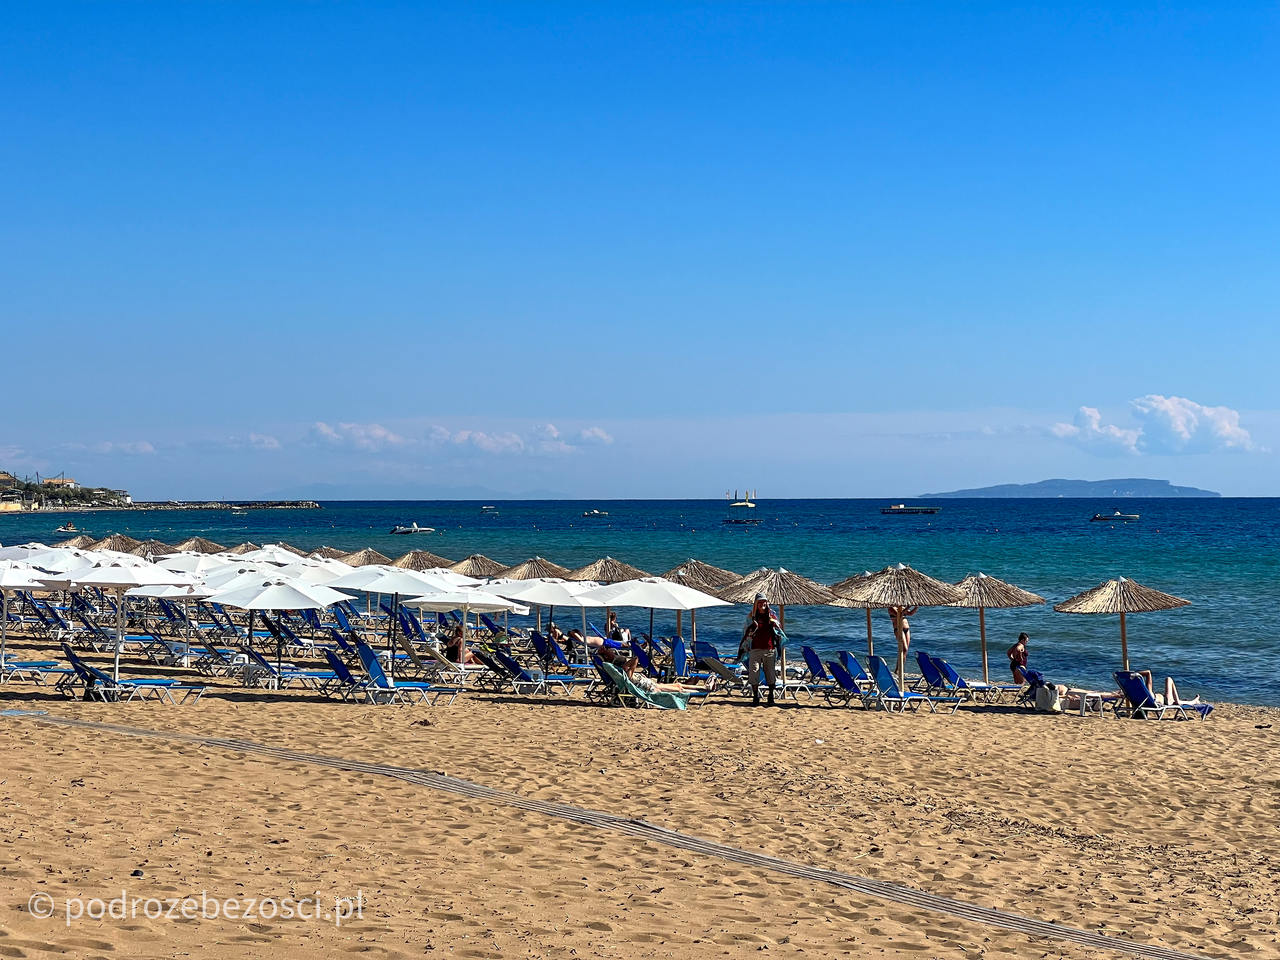 issos beach najpiekniejsze-plaze-na-korfu-grecja-plaza-piaszczysta-gdzie-warto-plazowac-jak-wygladaja-plaze-na-korfu-mapa-top-10-beaches-corfu-greece